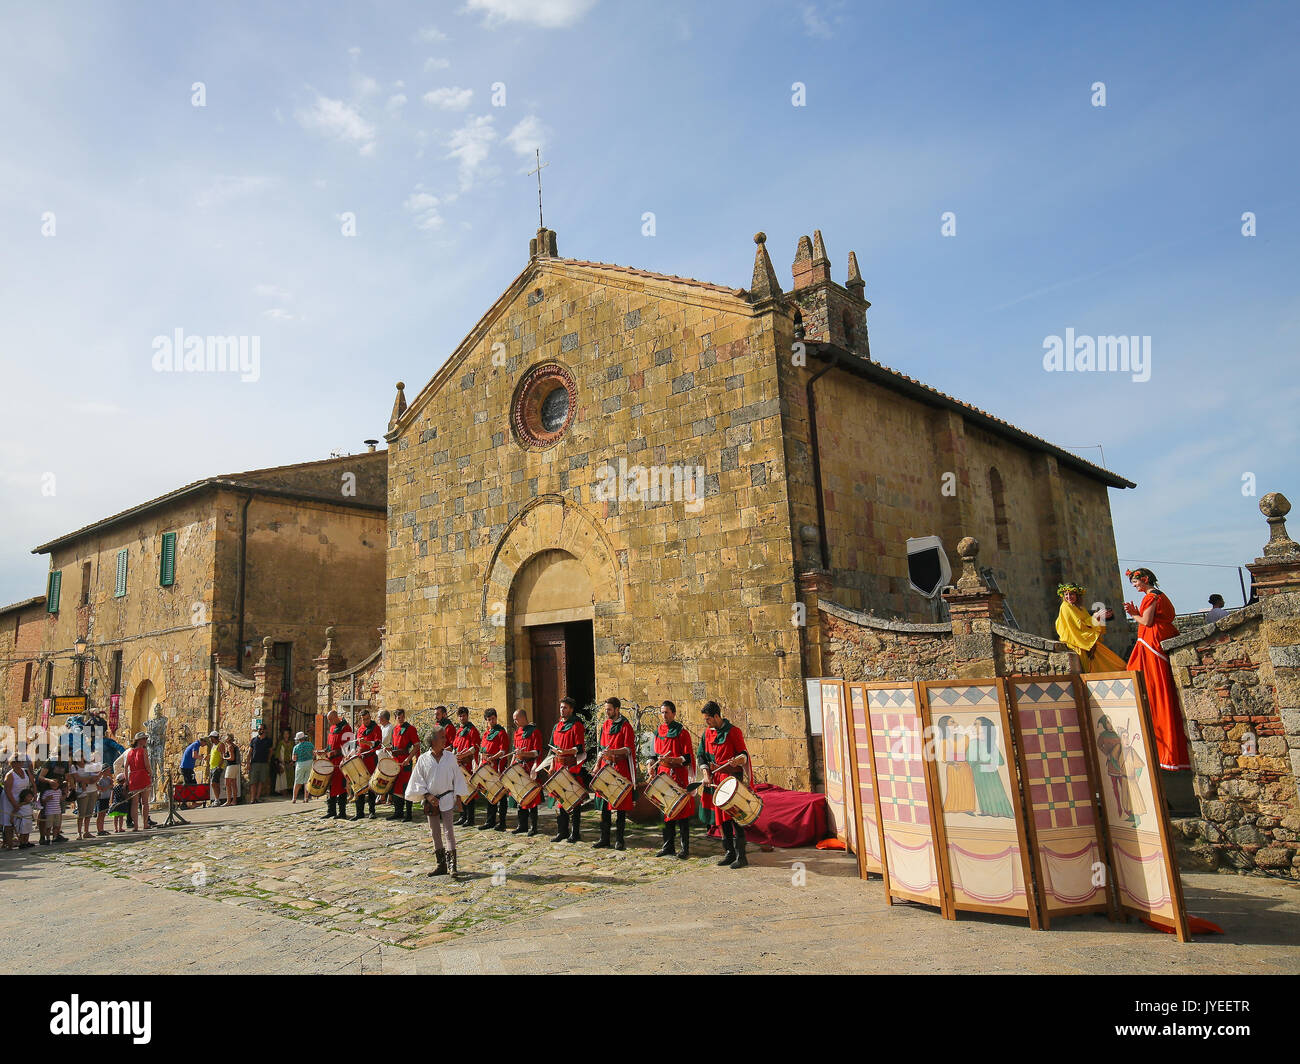 Mittelalter reenactment auf der Piazza Roma in Monteriggioni, eine Gemeinde in der Provinz von Siena in der italienischen Region Toskana. Stockfoto